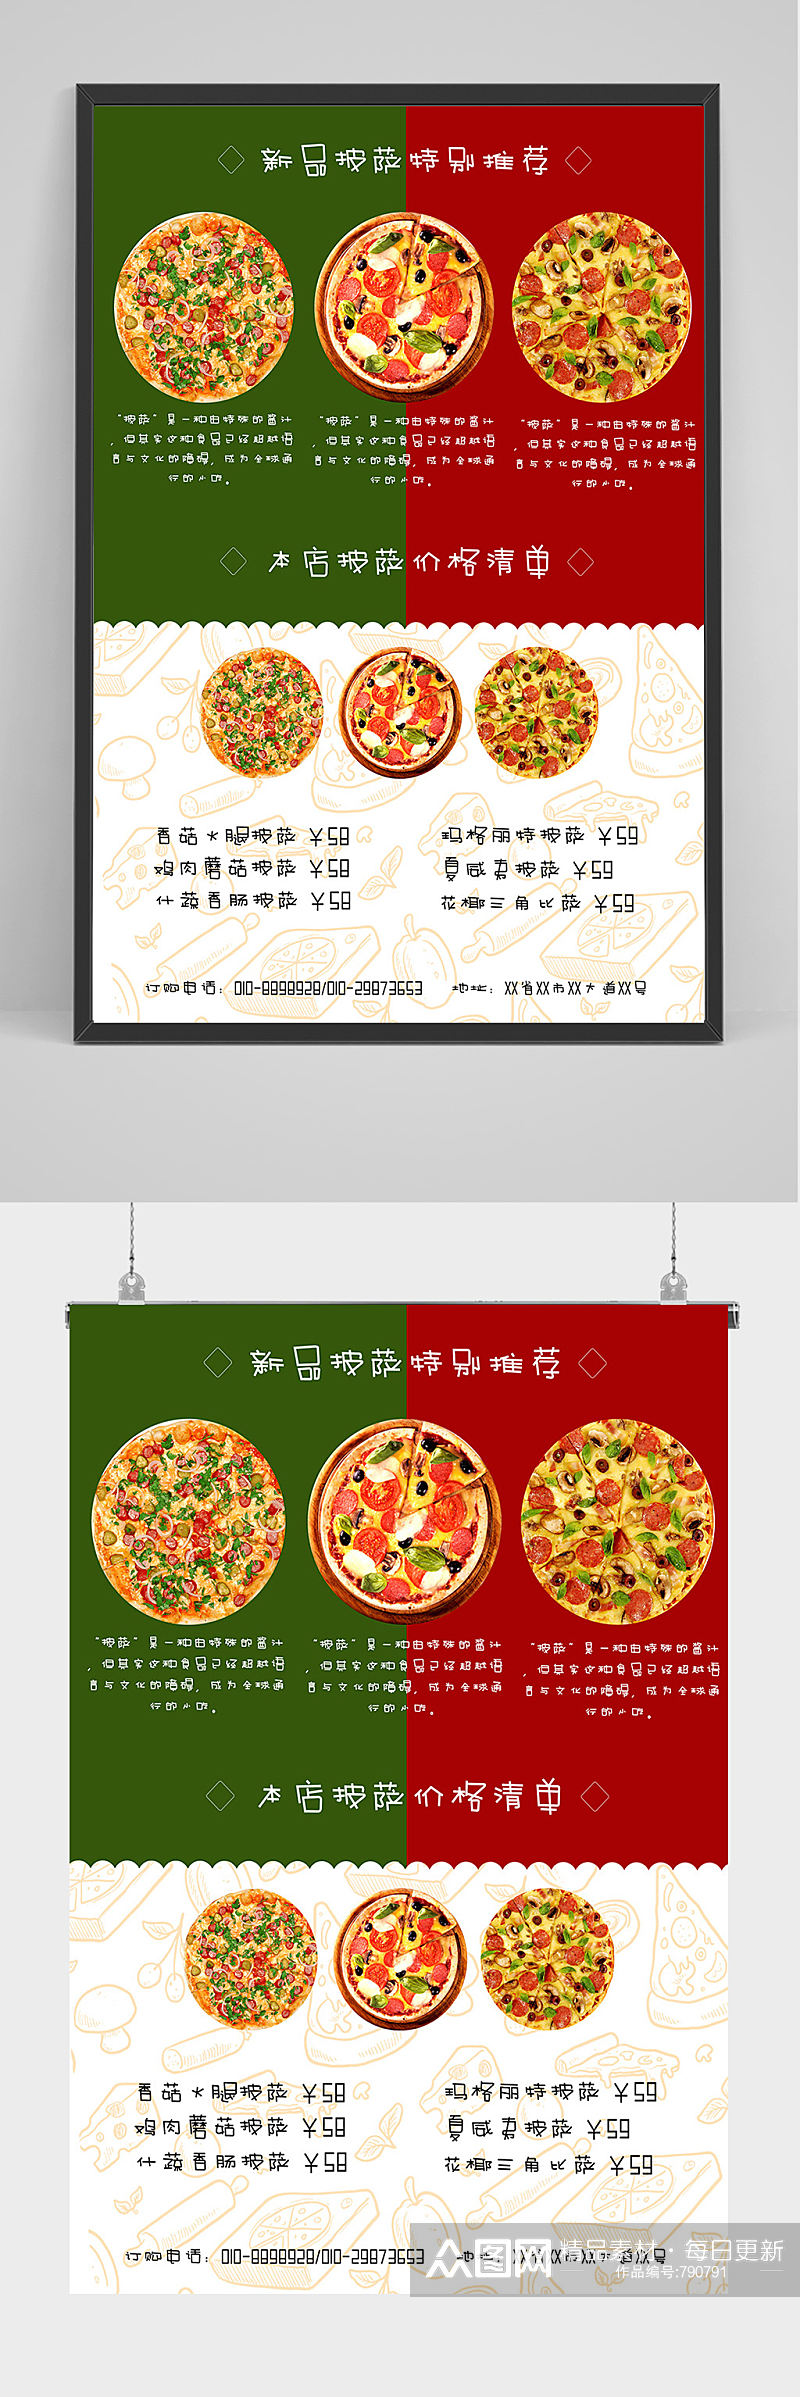 新品披萨美食海报设计素材